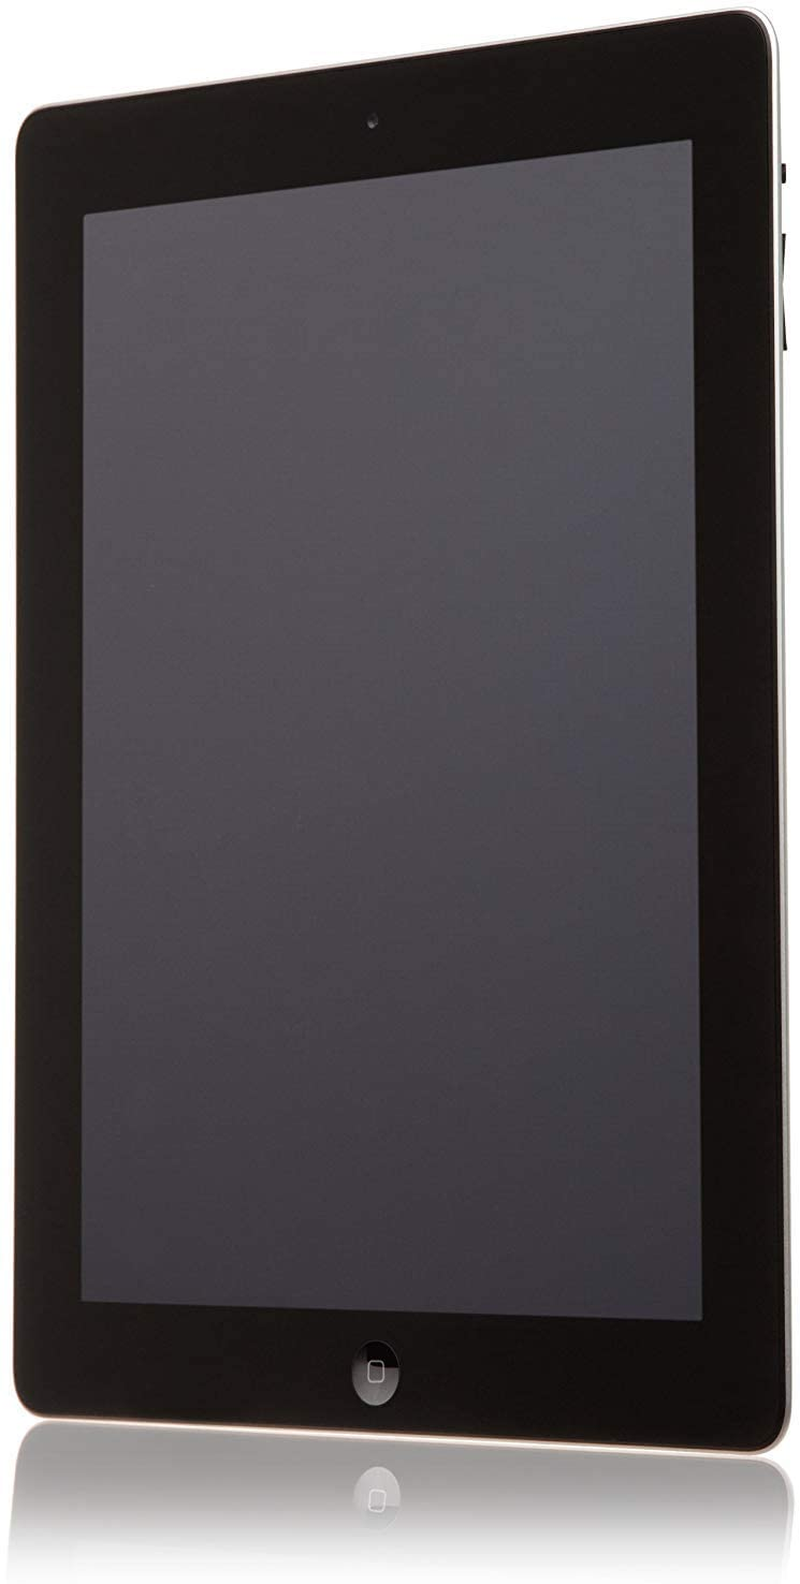 Apple Ipad 2 MC770LL/A Tablet (32GB, Wifi, Black) 2Nd Generation (Renewed)